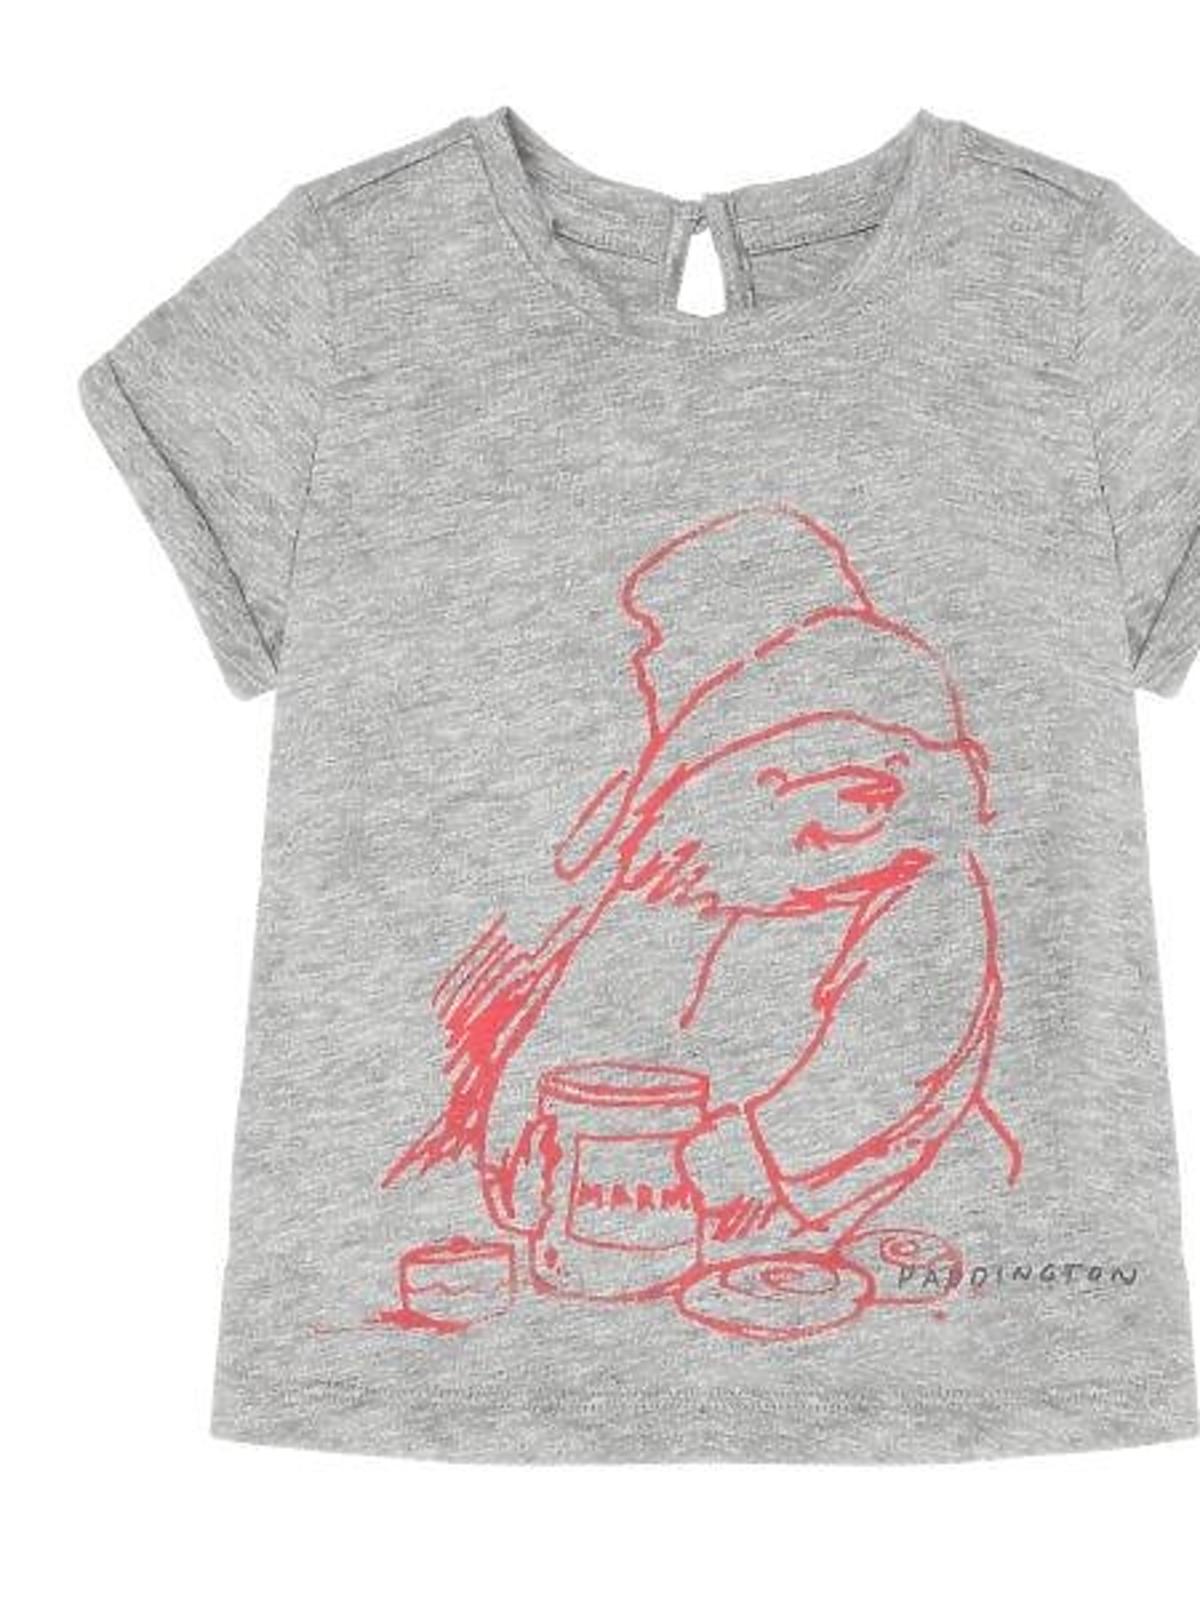 T-shirt szary - kolekcja Miś Paddington/ BabyGAP